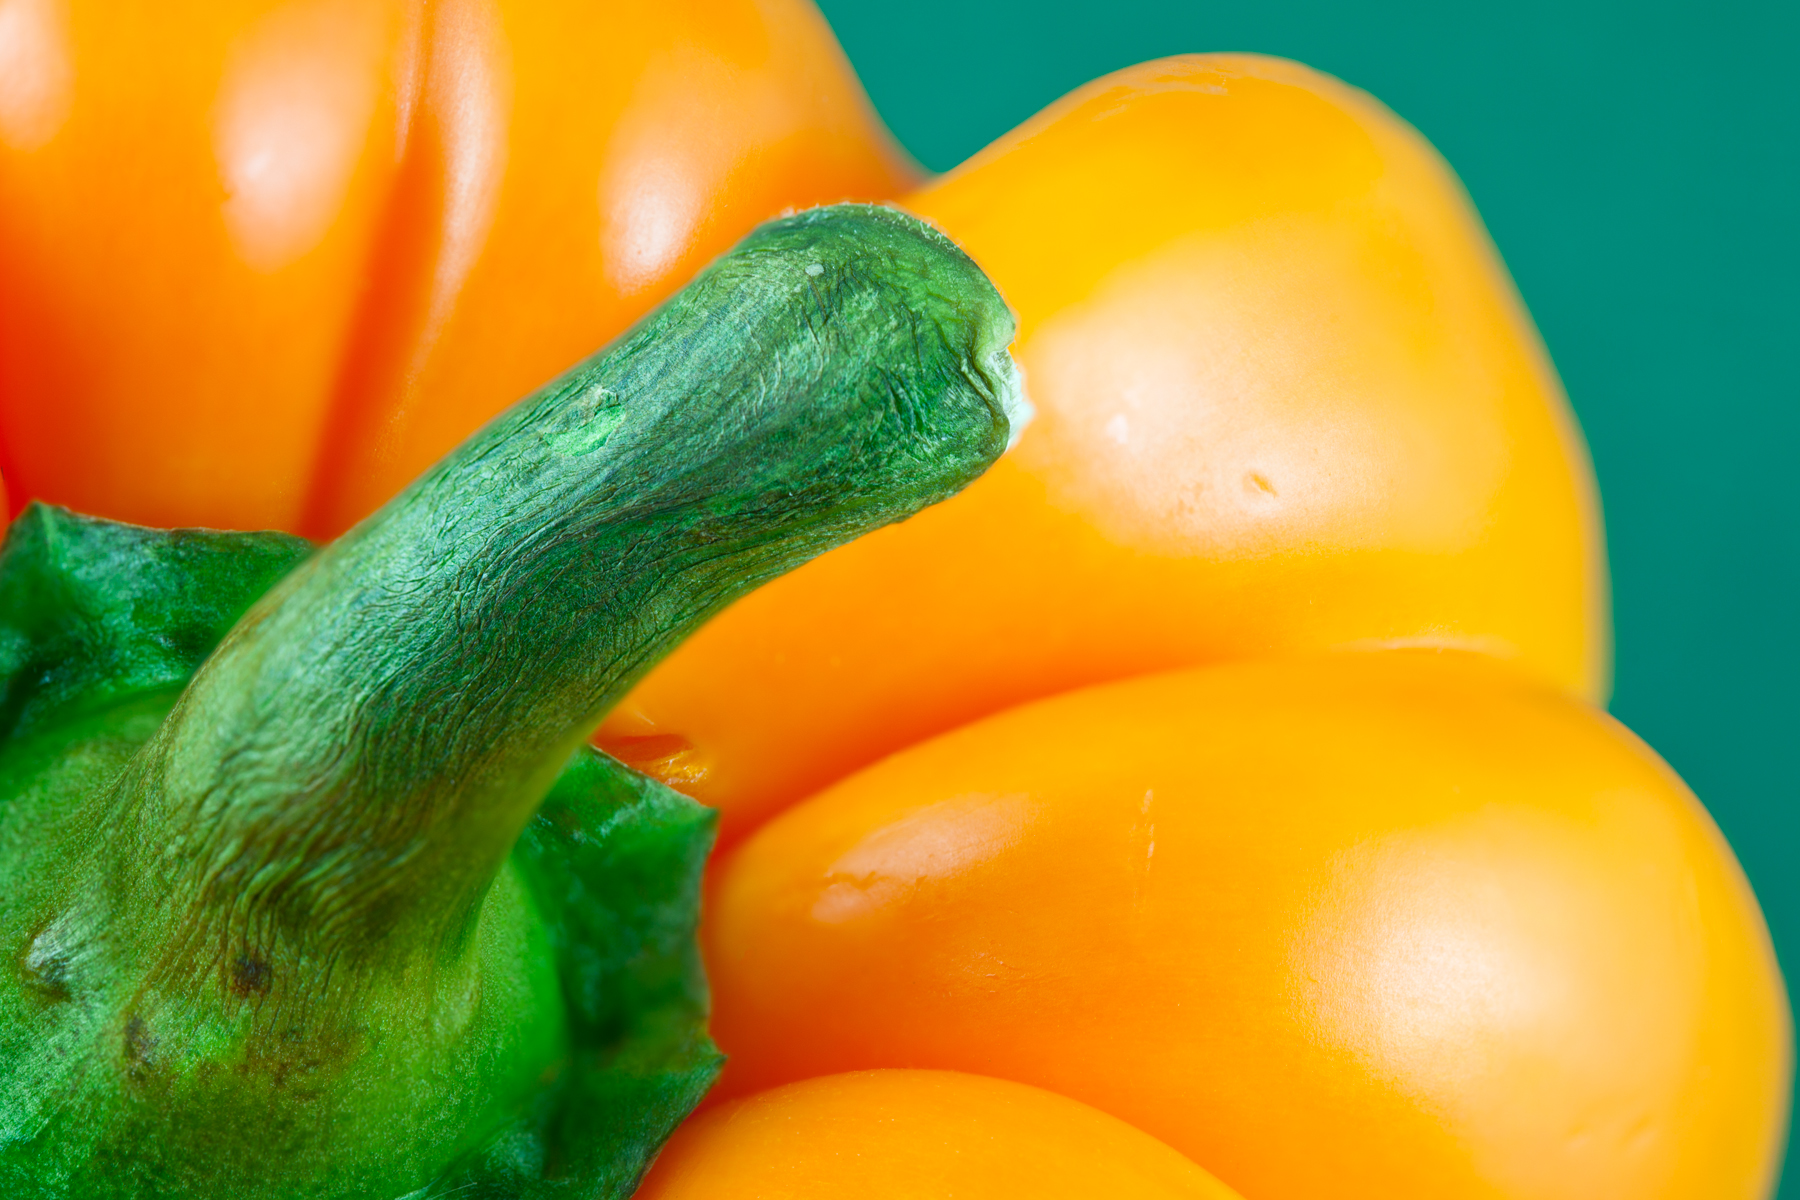 Orange pepper close-up photo